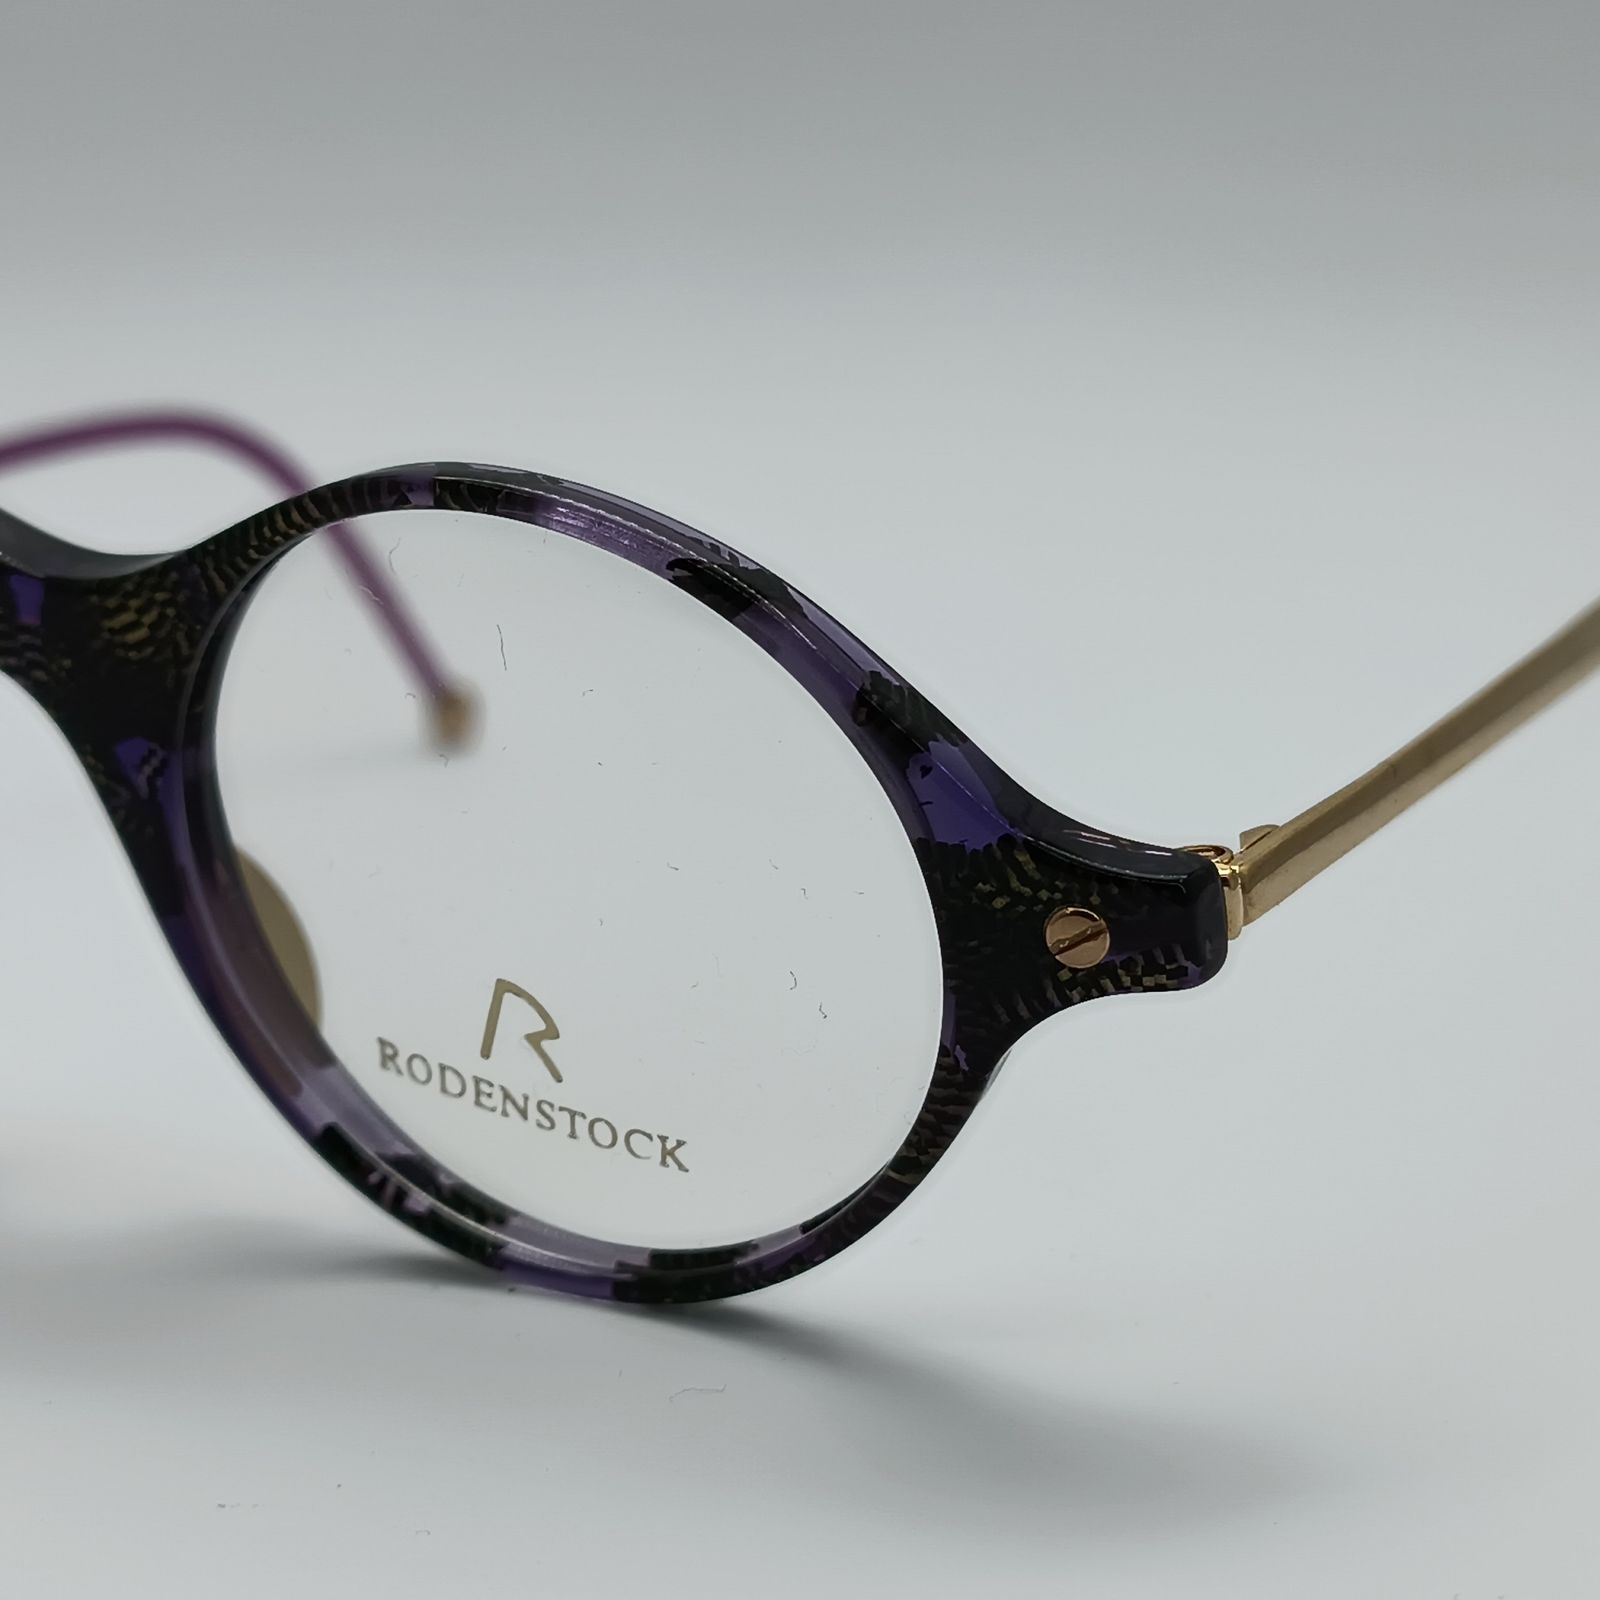 فریم عینک طبی زنانه رودن اشتوک مدل 7102 -  - 3